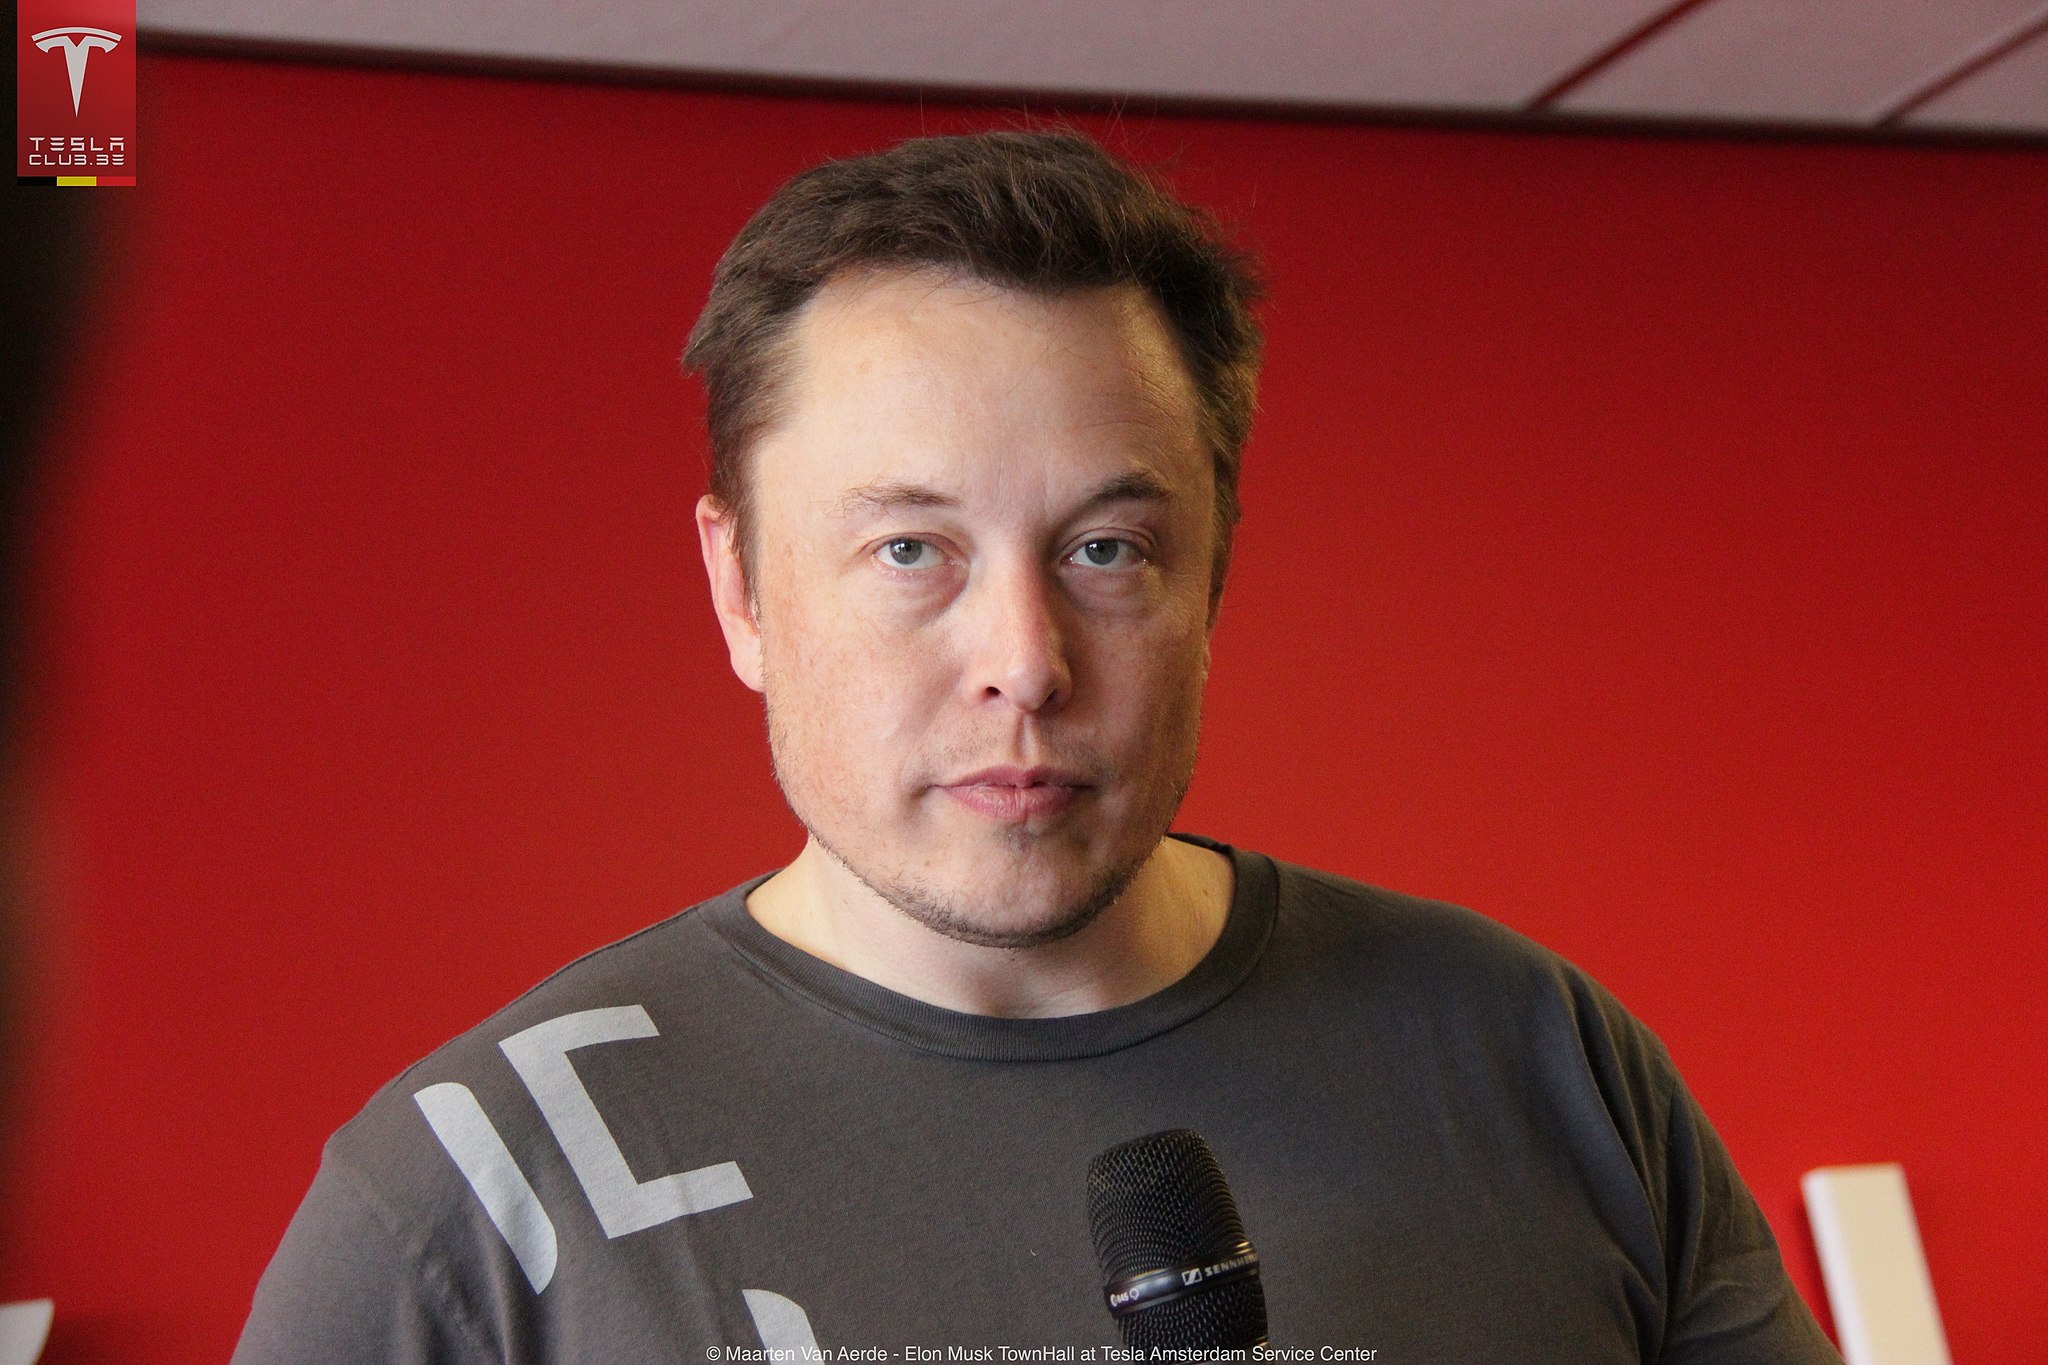 Media Matters répond à la menace de poursuite judiciaire contre Elon Musk